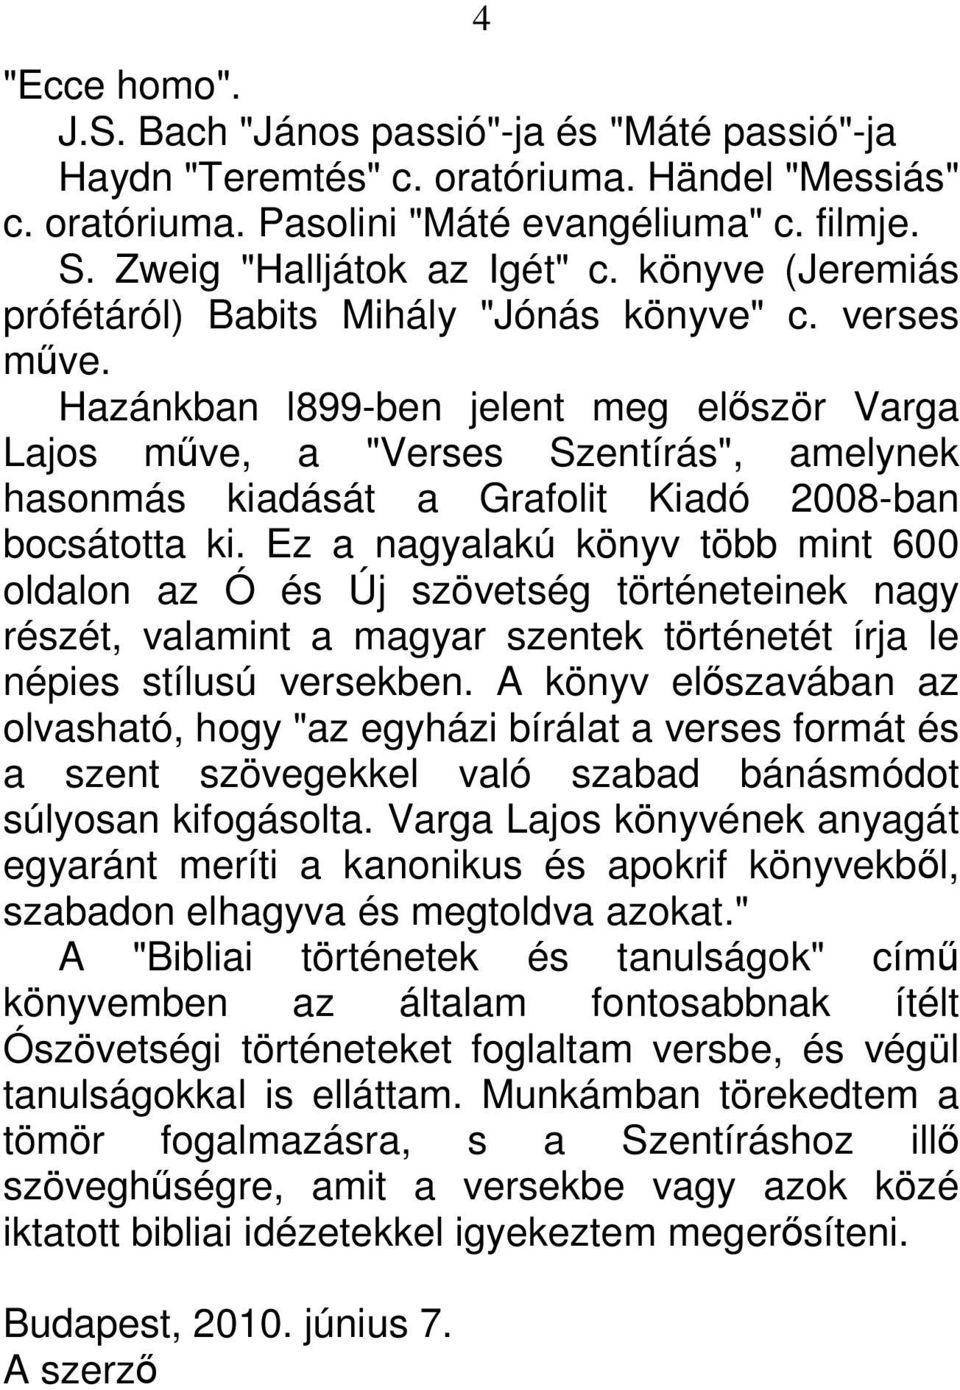 Hazánkban l899-ben jelent meg először Varga Lajos műve, a "Verses Szentírás", amelynek hasonmás kiadását a Grafolit Kiadó 2008-ban bocsátotta ki.